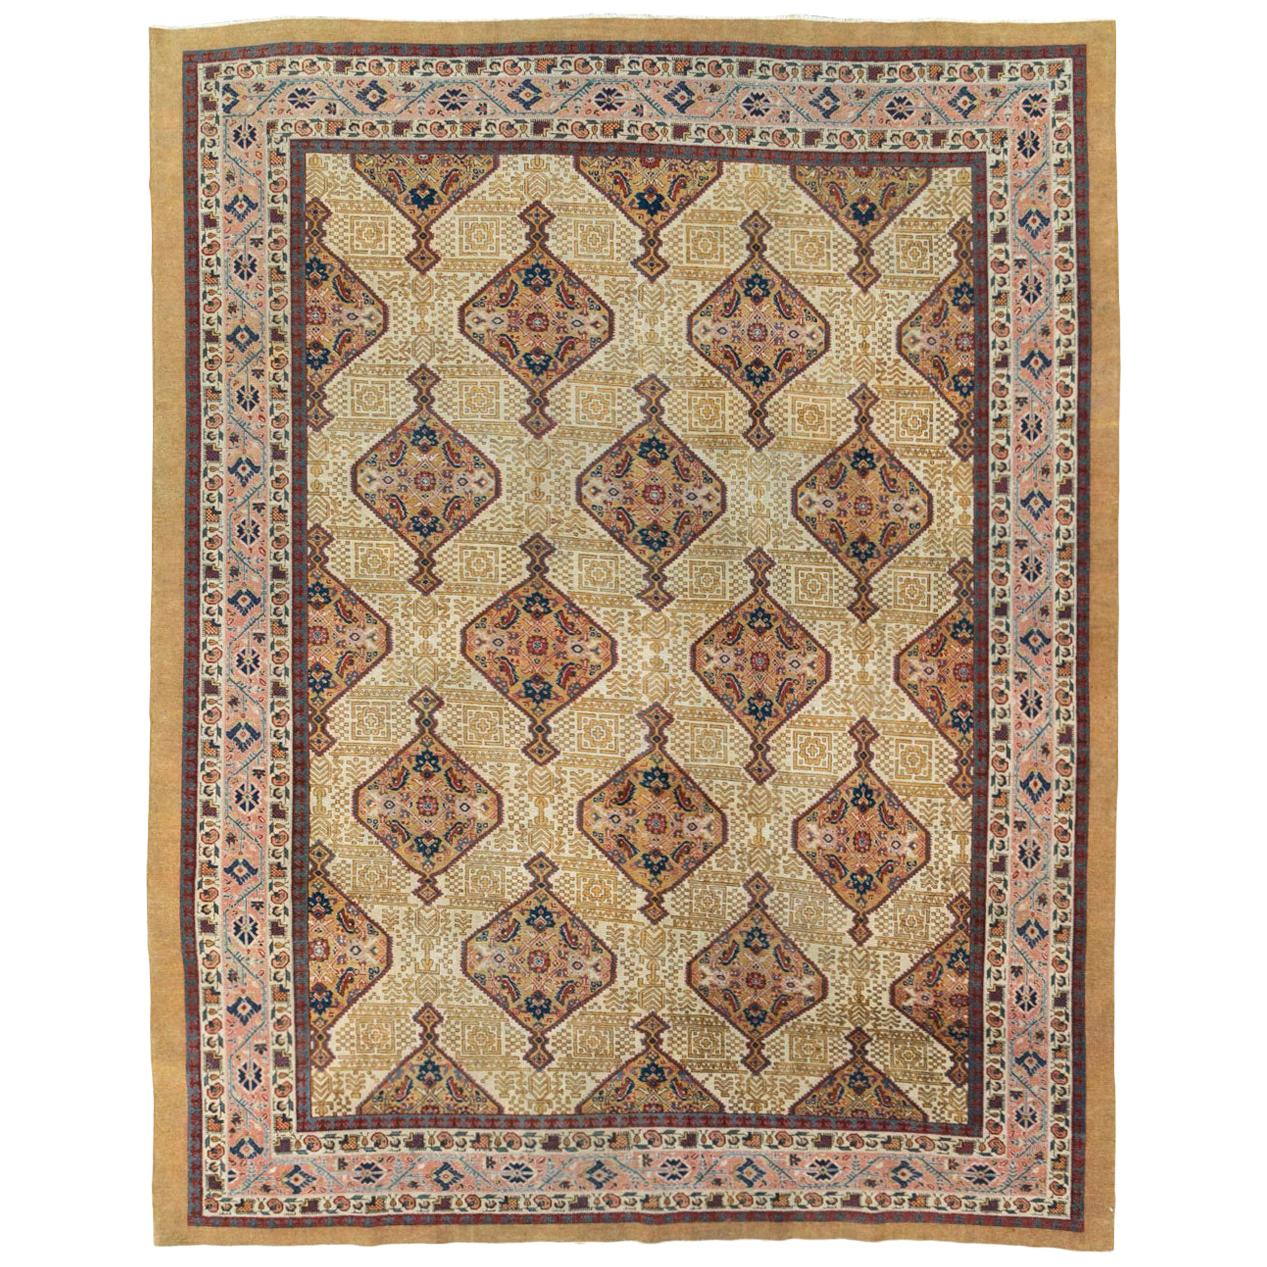 Handgefertigter persischer Täbriz-Teppich in Zimmergröße aus dem frühen 20. Jahrhundert